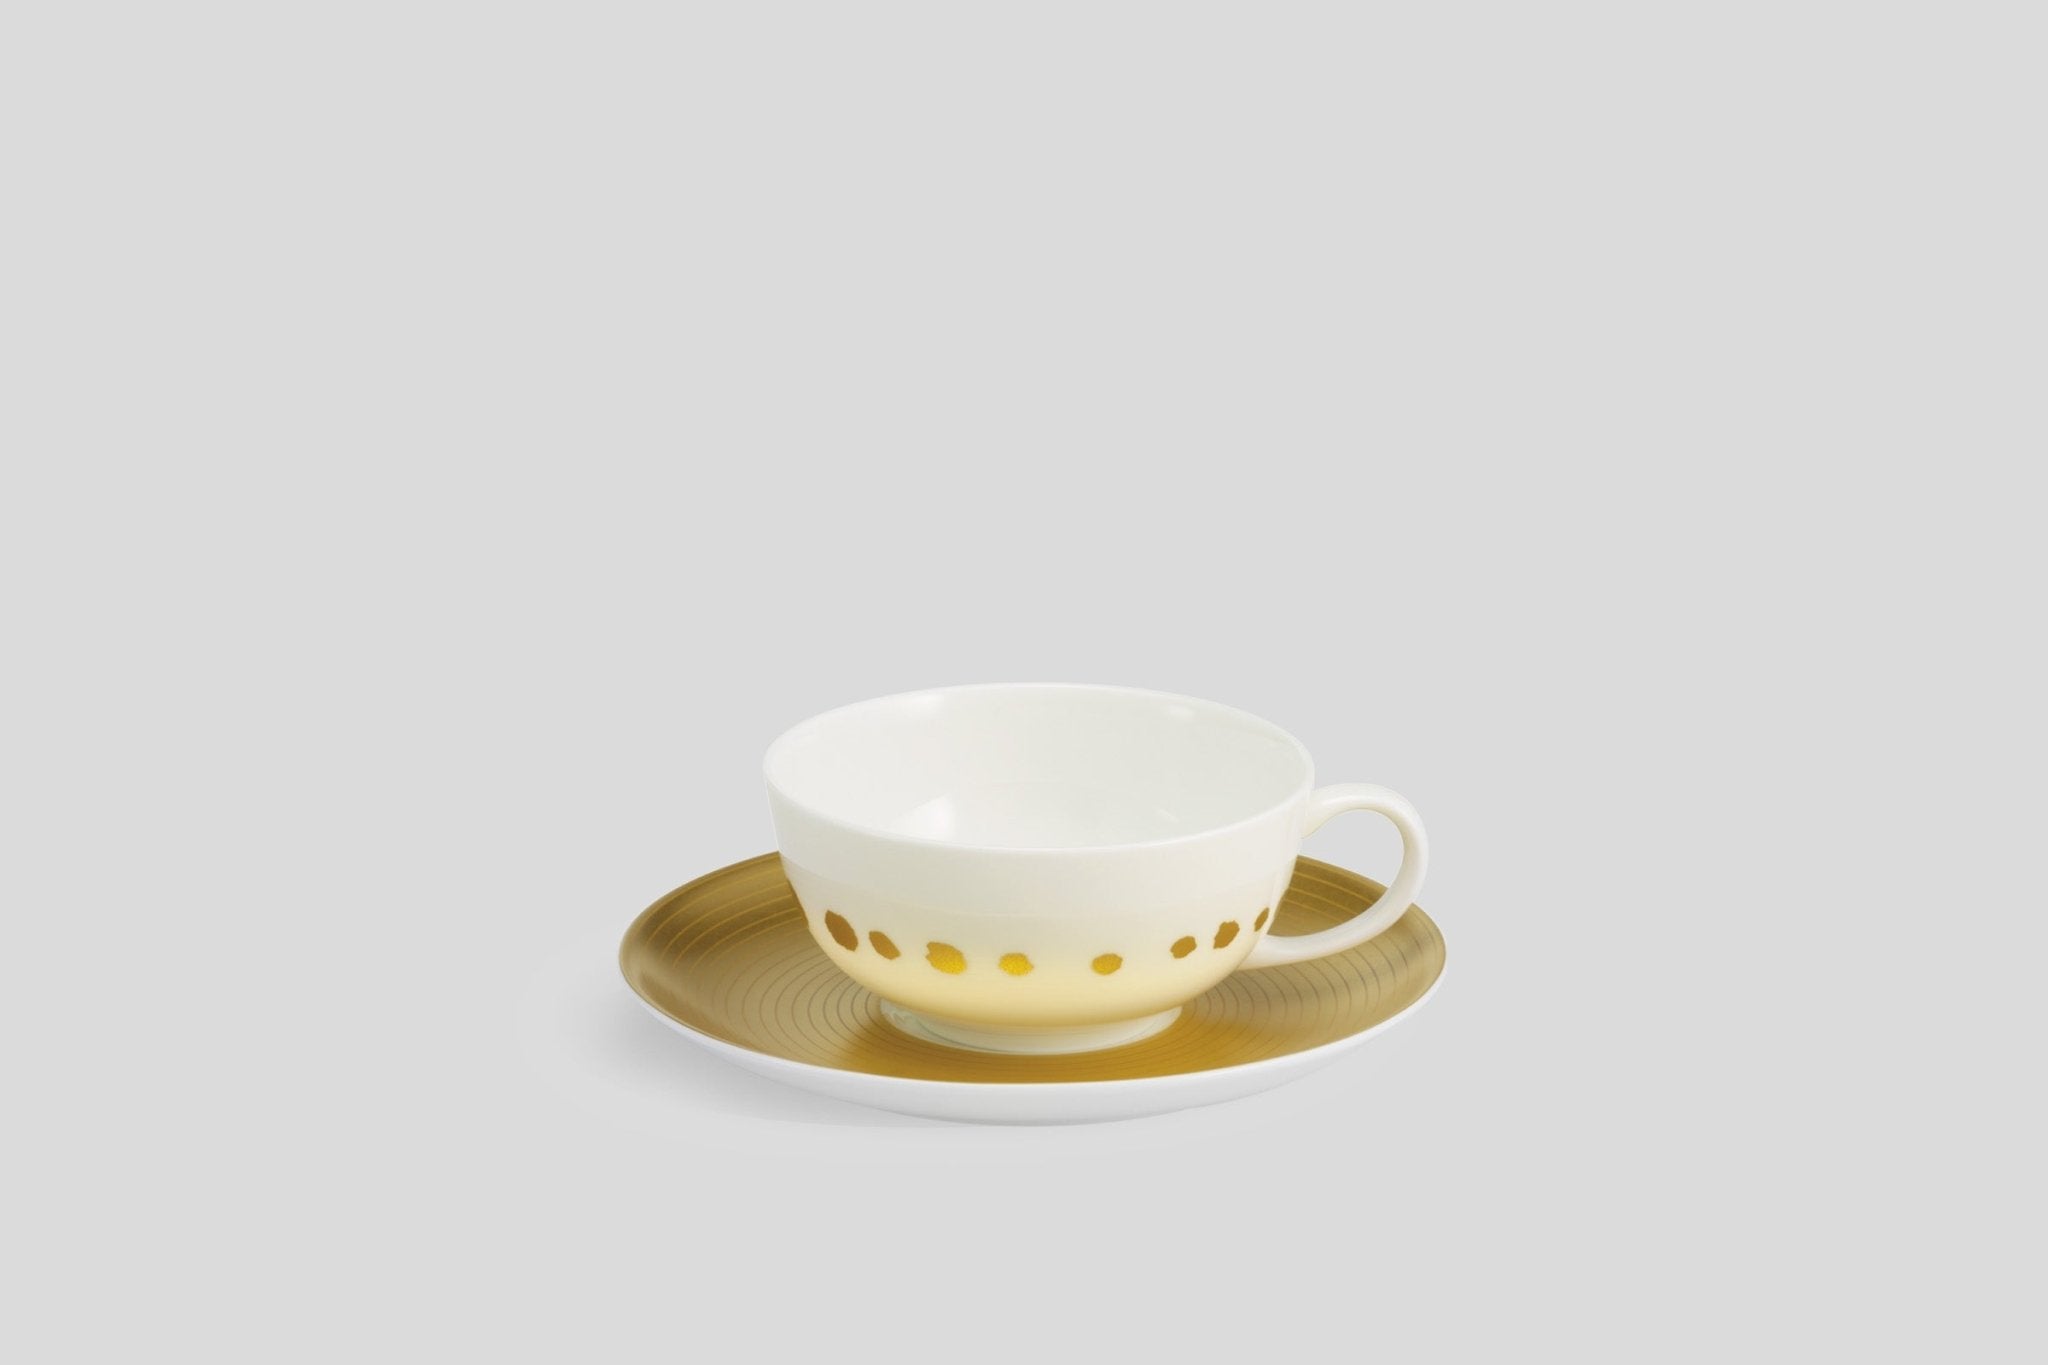 Designer-Luxury-Modern-Dibbern Golden Pearls Teacup & Saucer-Dibbern-Gold-Golden Pearls-Bodo Sperlein-Bone China-Designer-Luxury-Modern-Tasse-Becher-Kaffee Tasse